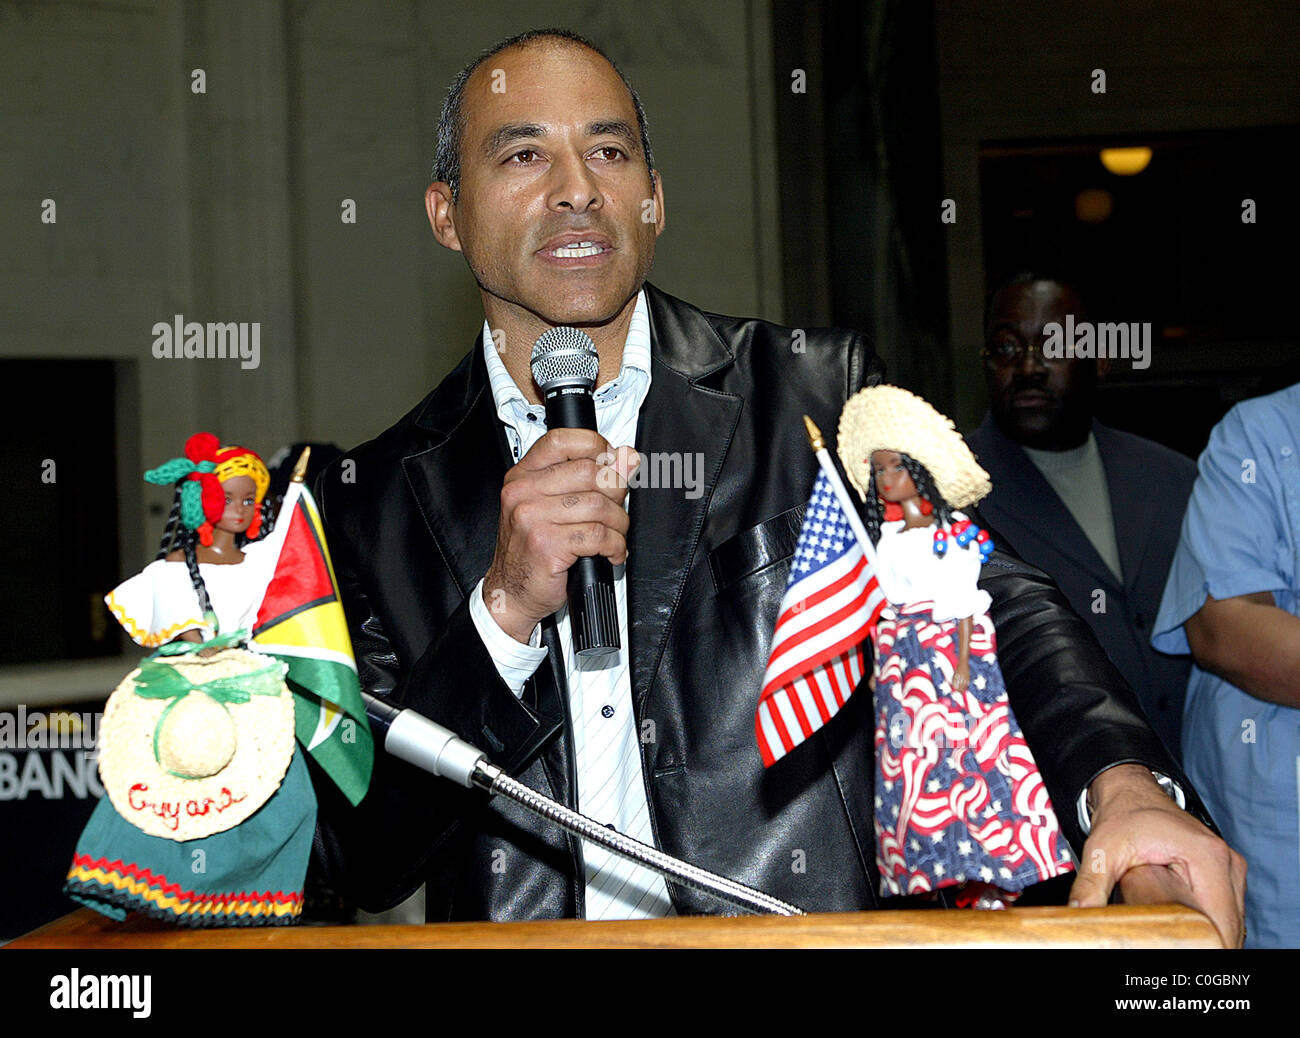 Marc Gomez feiert Guyana 42. Jahrestag der Unabhängigkeit und der Flagge Anhebung Zeremonie New York City, USA - 31.02.08 Stockfoto